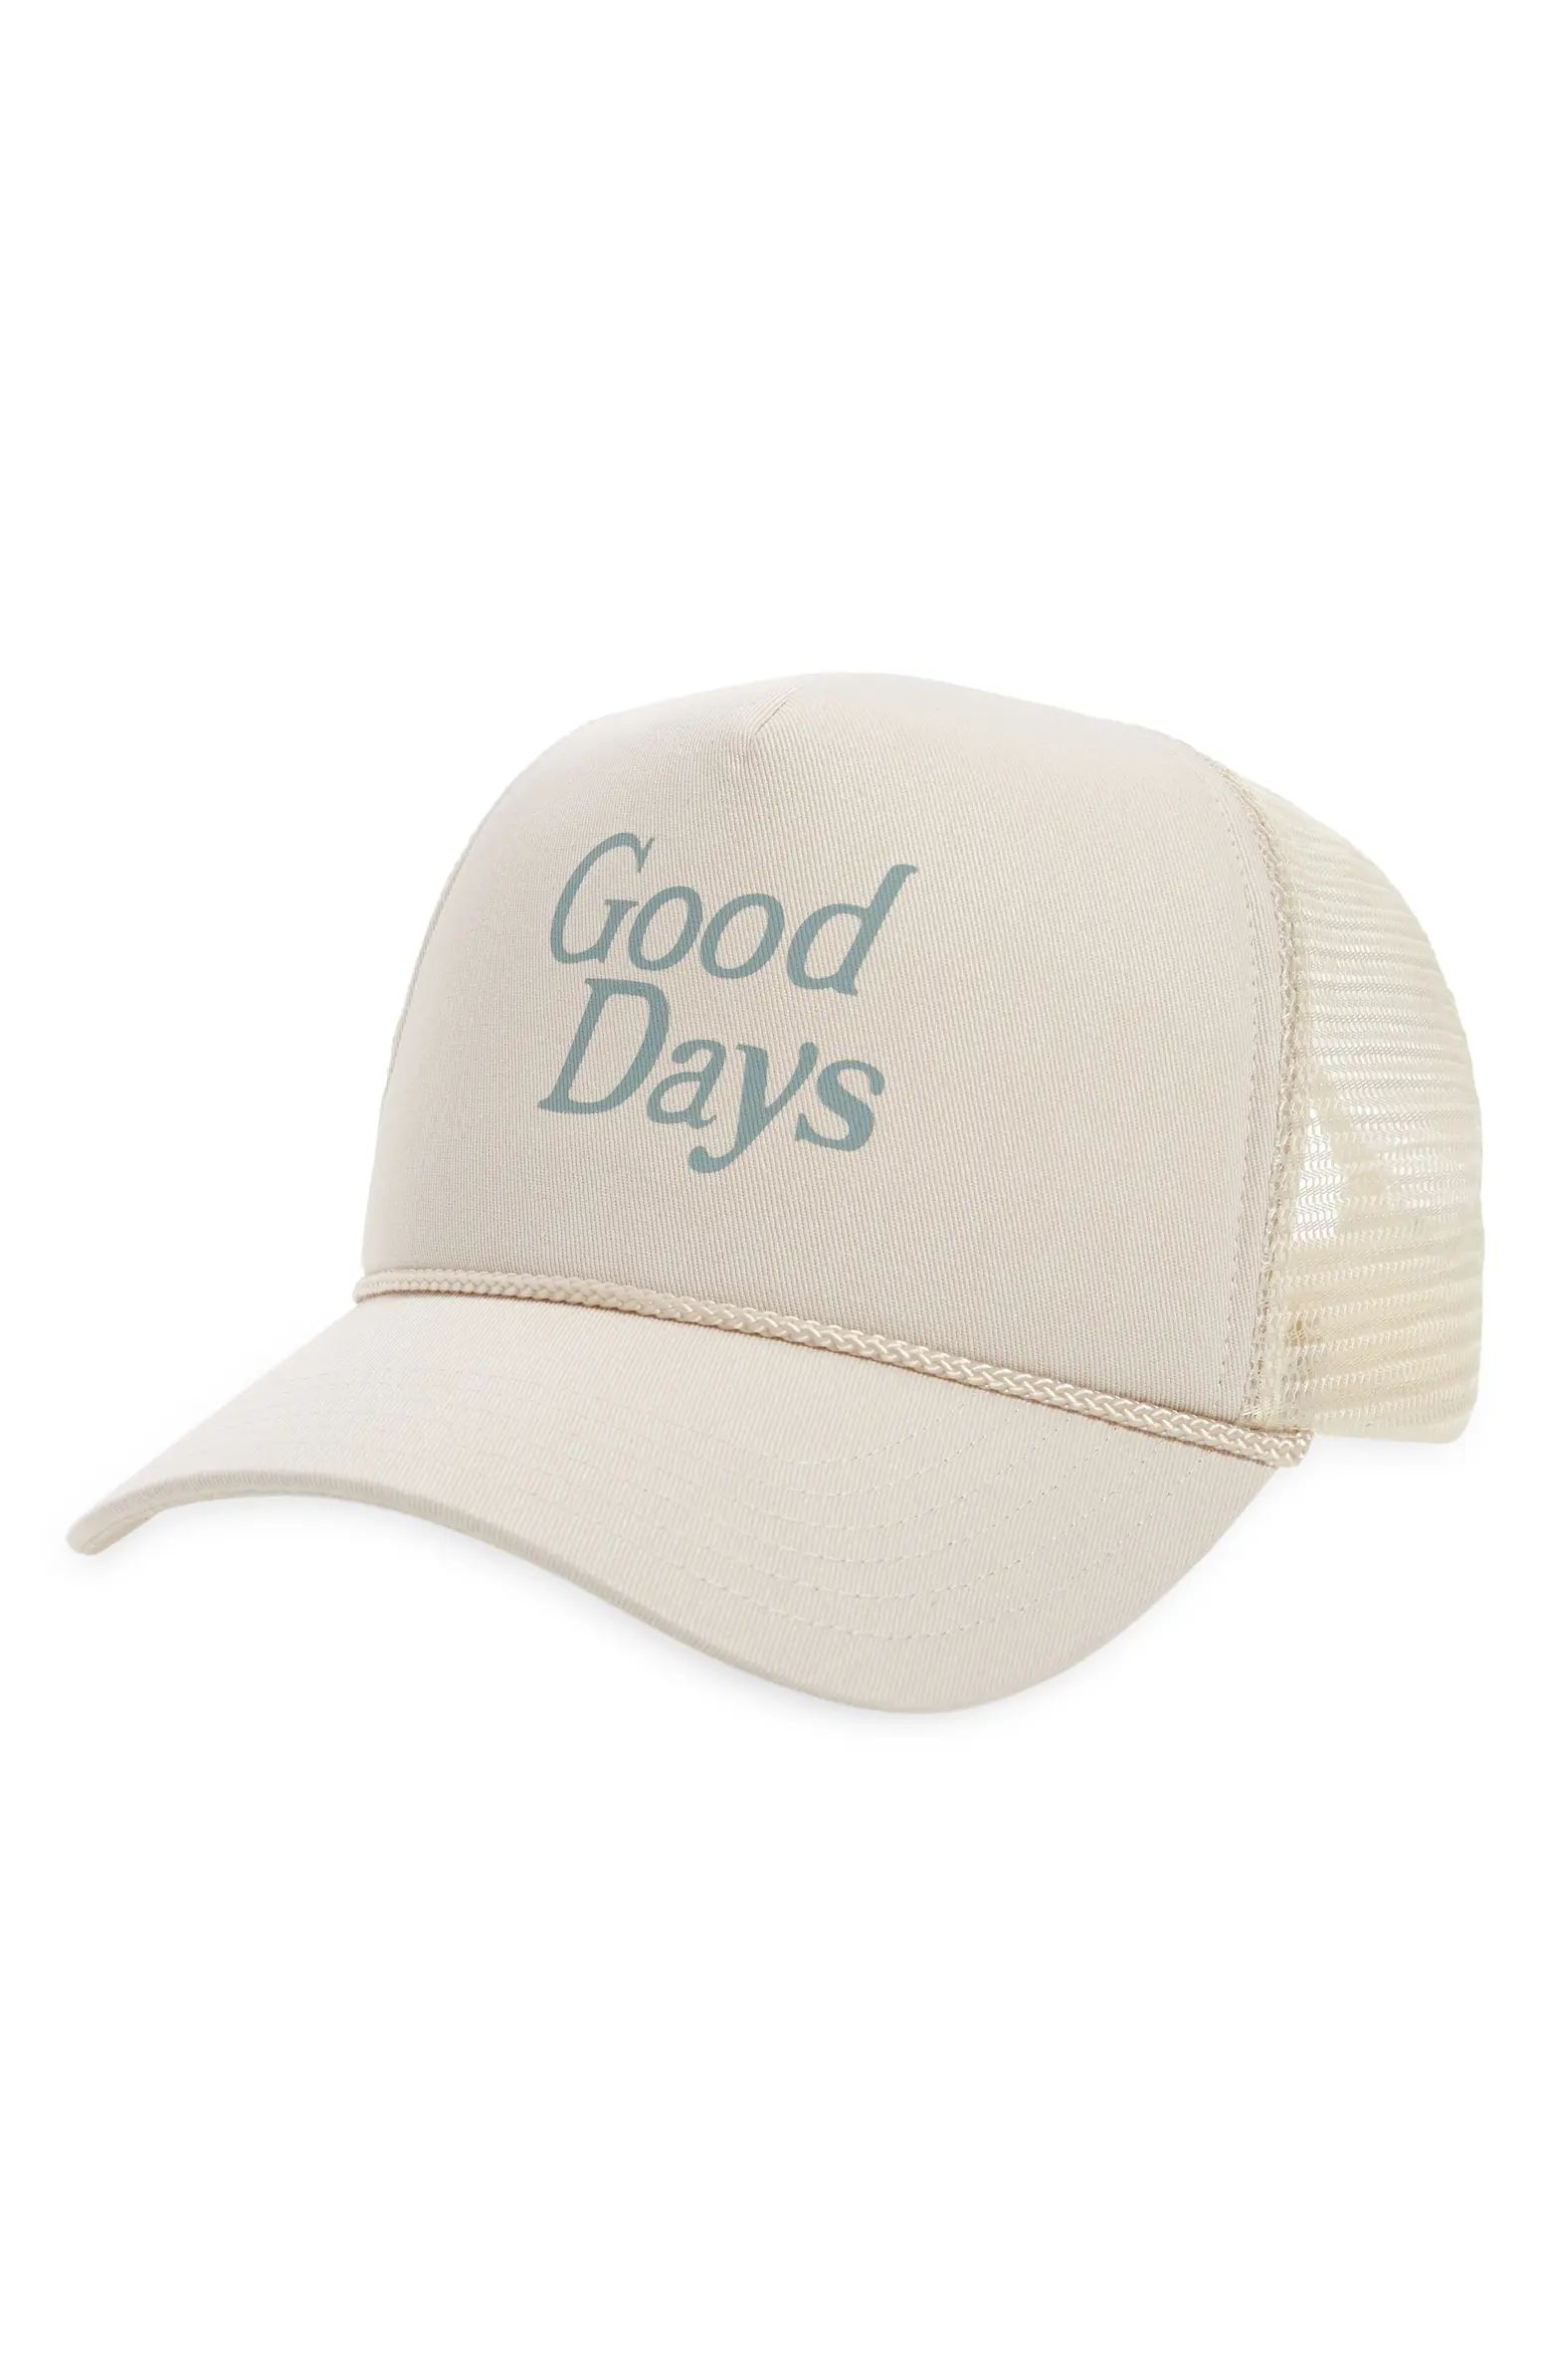 Good Days Trucker Hat | Nordstrom